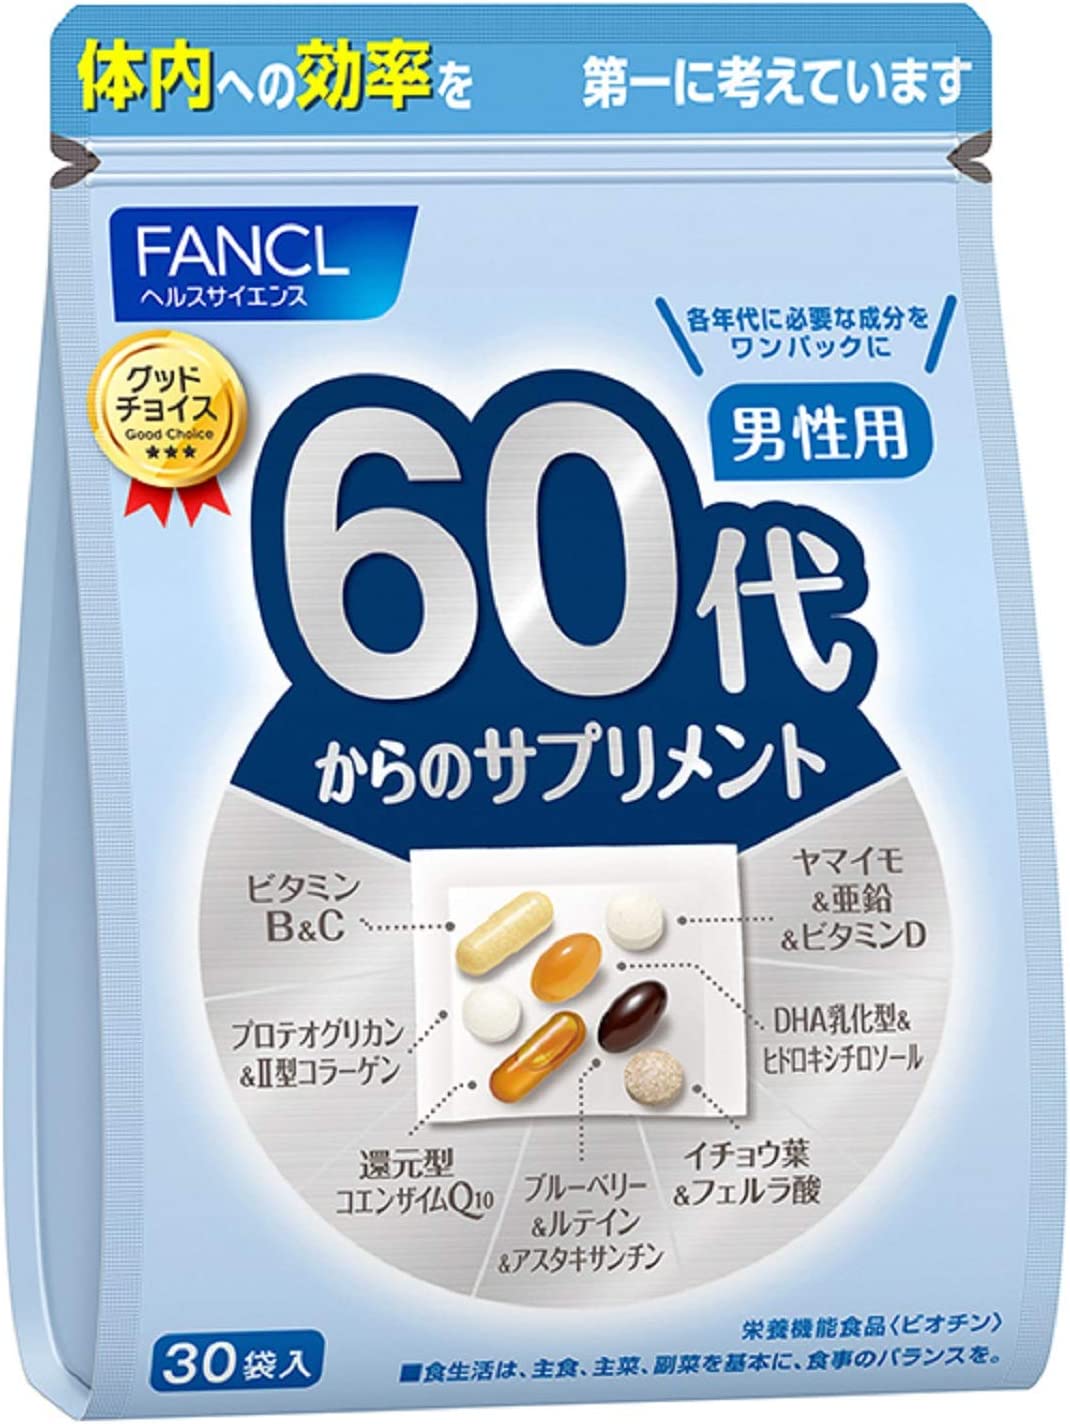 комплекс черники и гинкго очанки плюс лютеин solgar 60 капсул Комплекс витамин FANCL для мужчин старше 60 лет